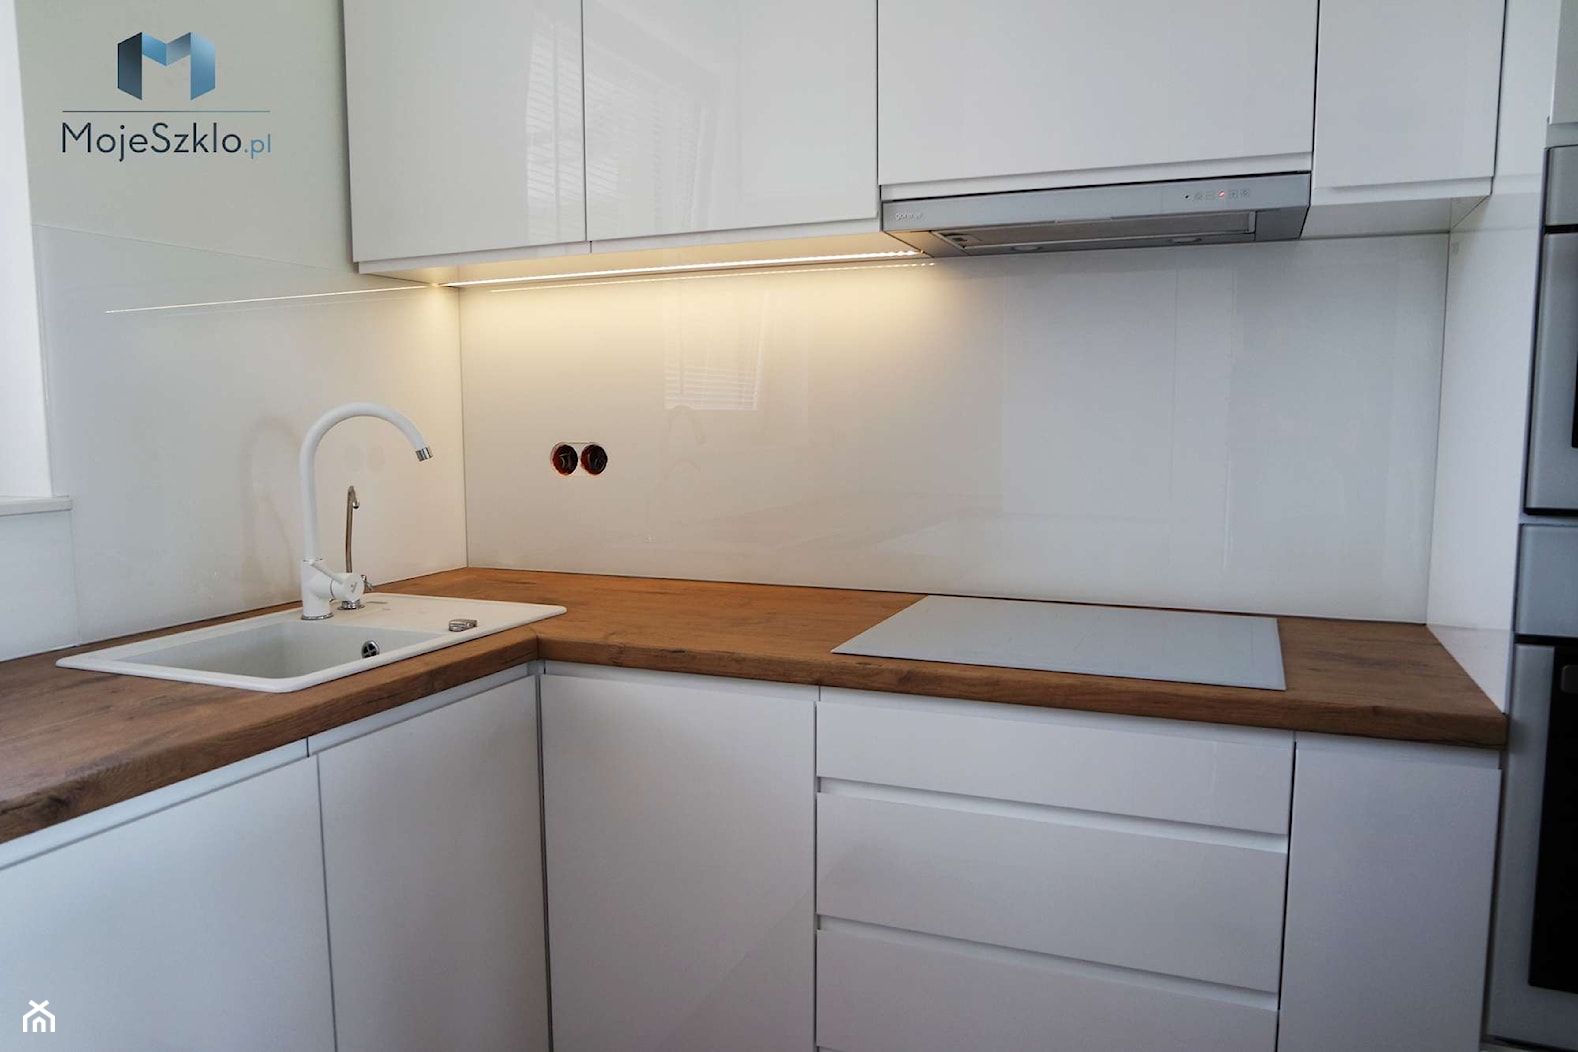 Lacobel biały - Kuchnia, styl minimalistyczny - zdjęcie od Mojeszklo.pl - Homebook